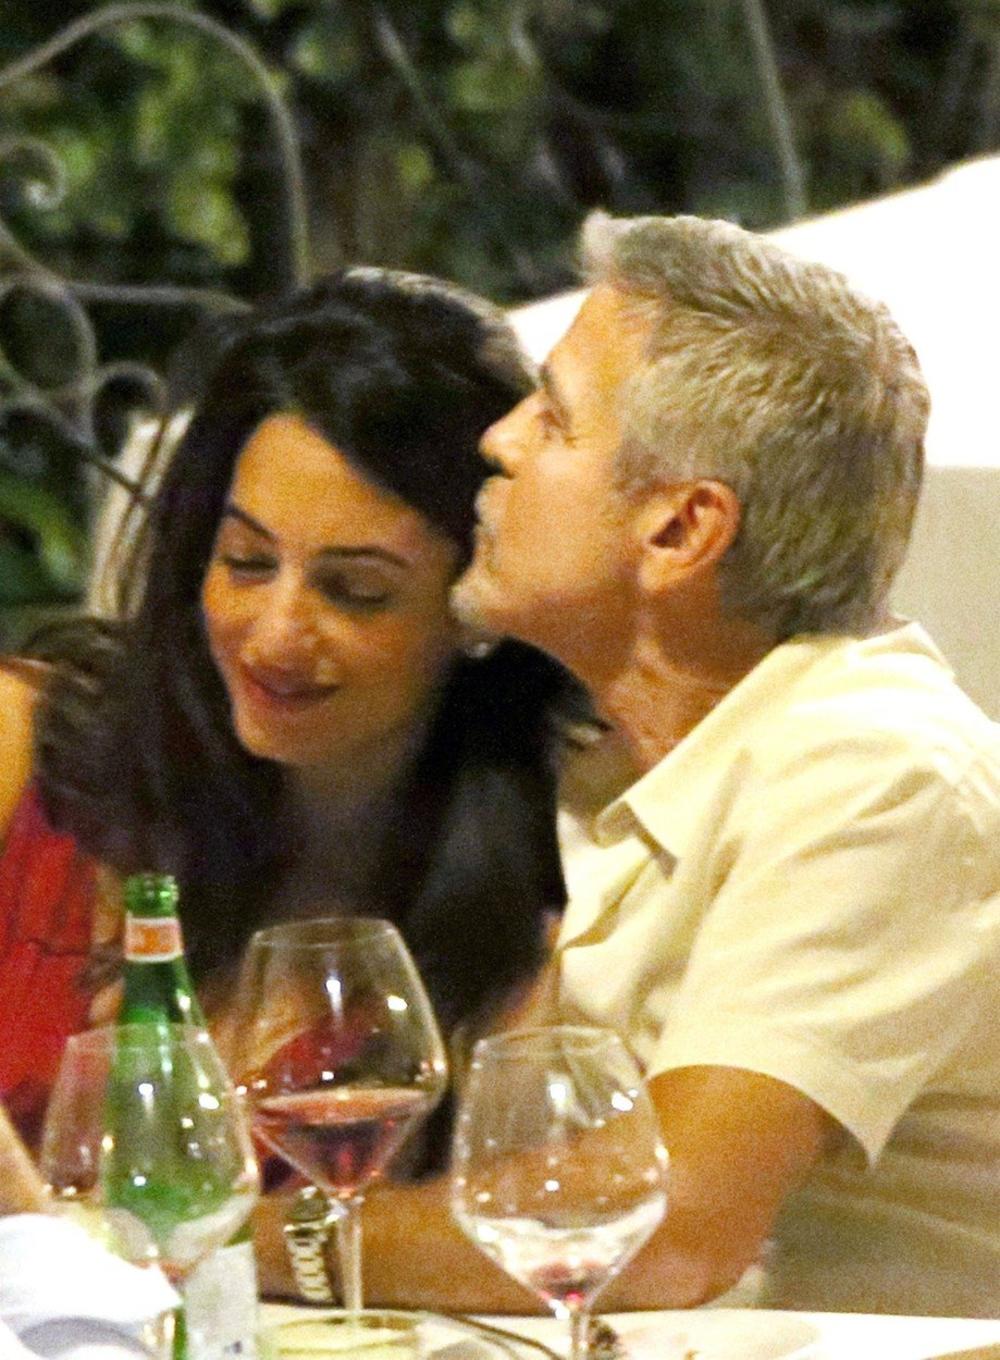 <p>Šarmantnu advokaticu nije bilo lako osvojiti, a <strong>Džordž Kluni</strong> je iznenađujuće iskreno podelio sve detalje borbe za njeno srce.</p>